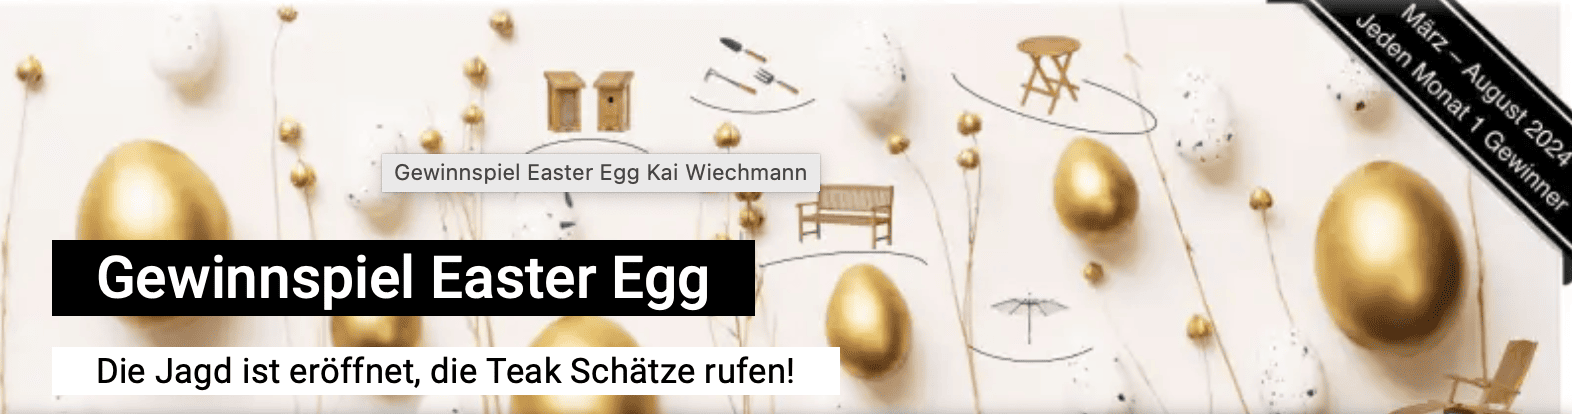 case_Kai Wiechmann-Gewinnspiel Easter Egg